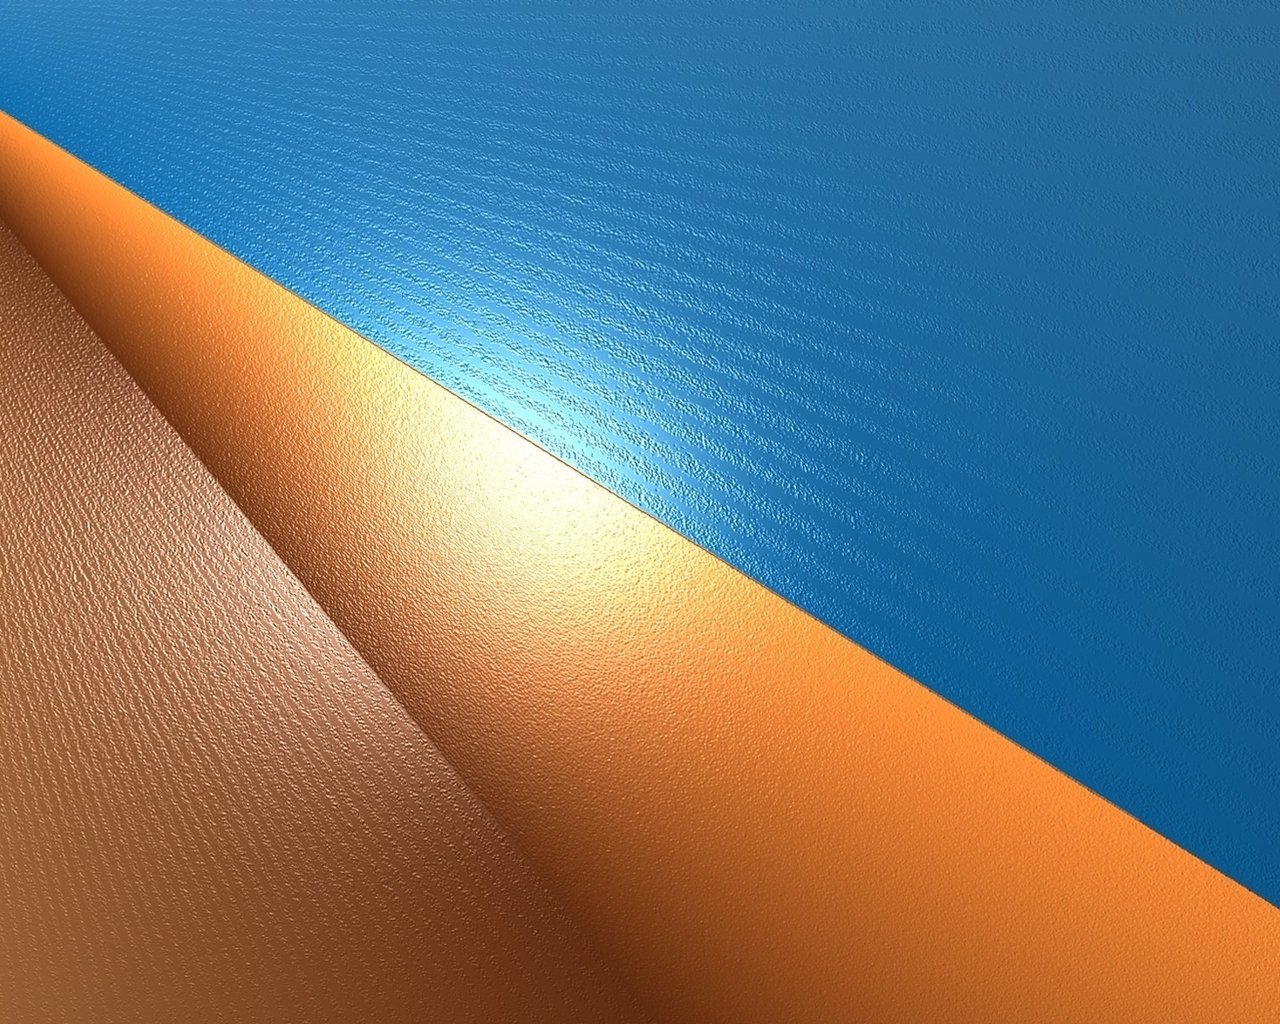 Картинка: Рельеф, оранжевый, голубой, угол, цвет, линии